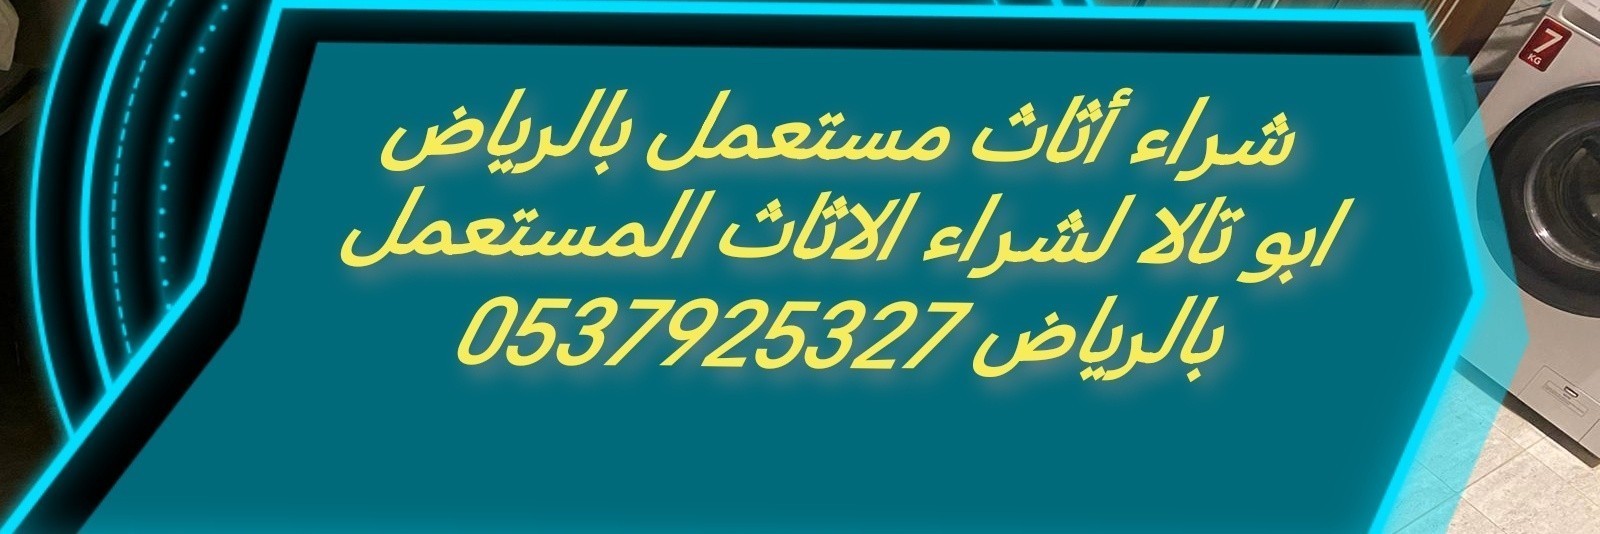 شراء أثاث مستعمل حي الدار البيضاء 0537925327 الرياض